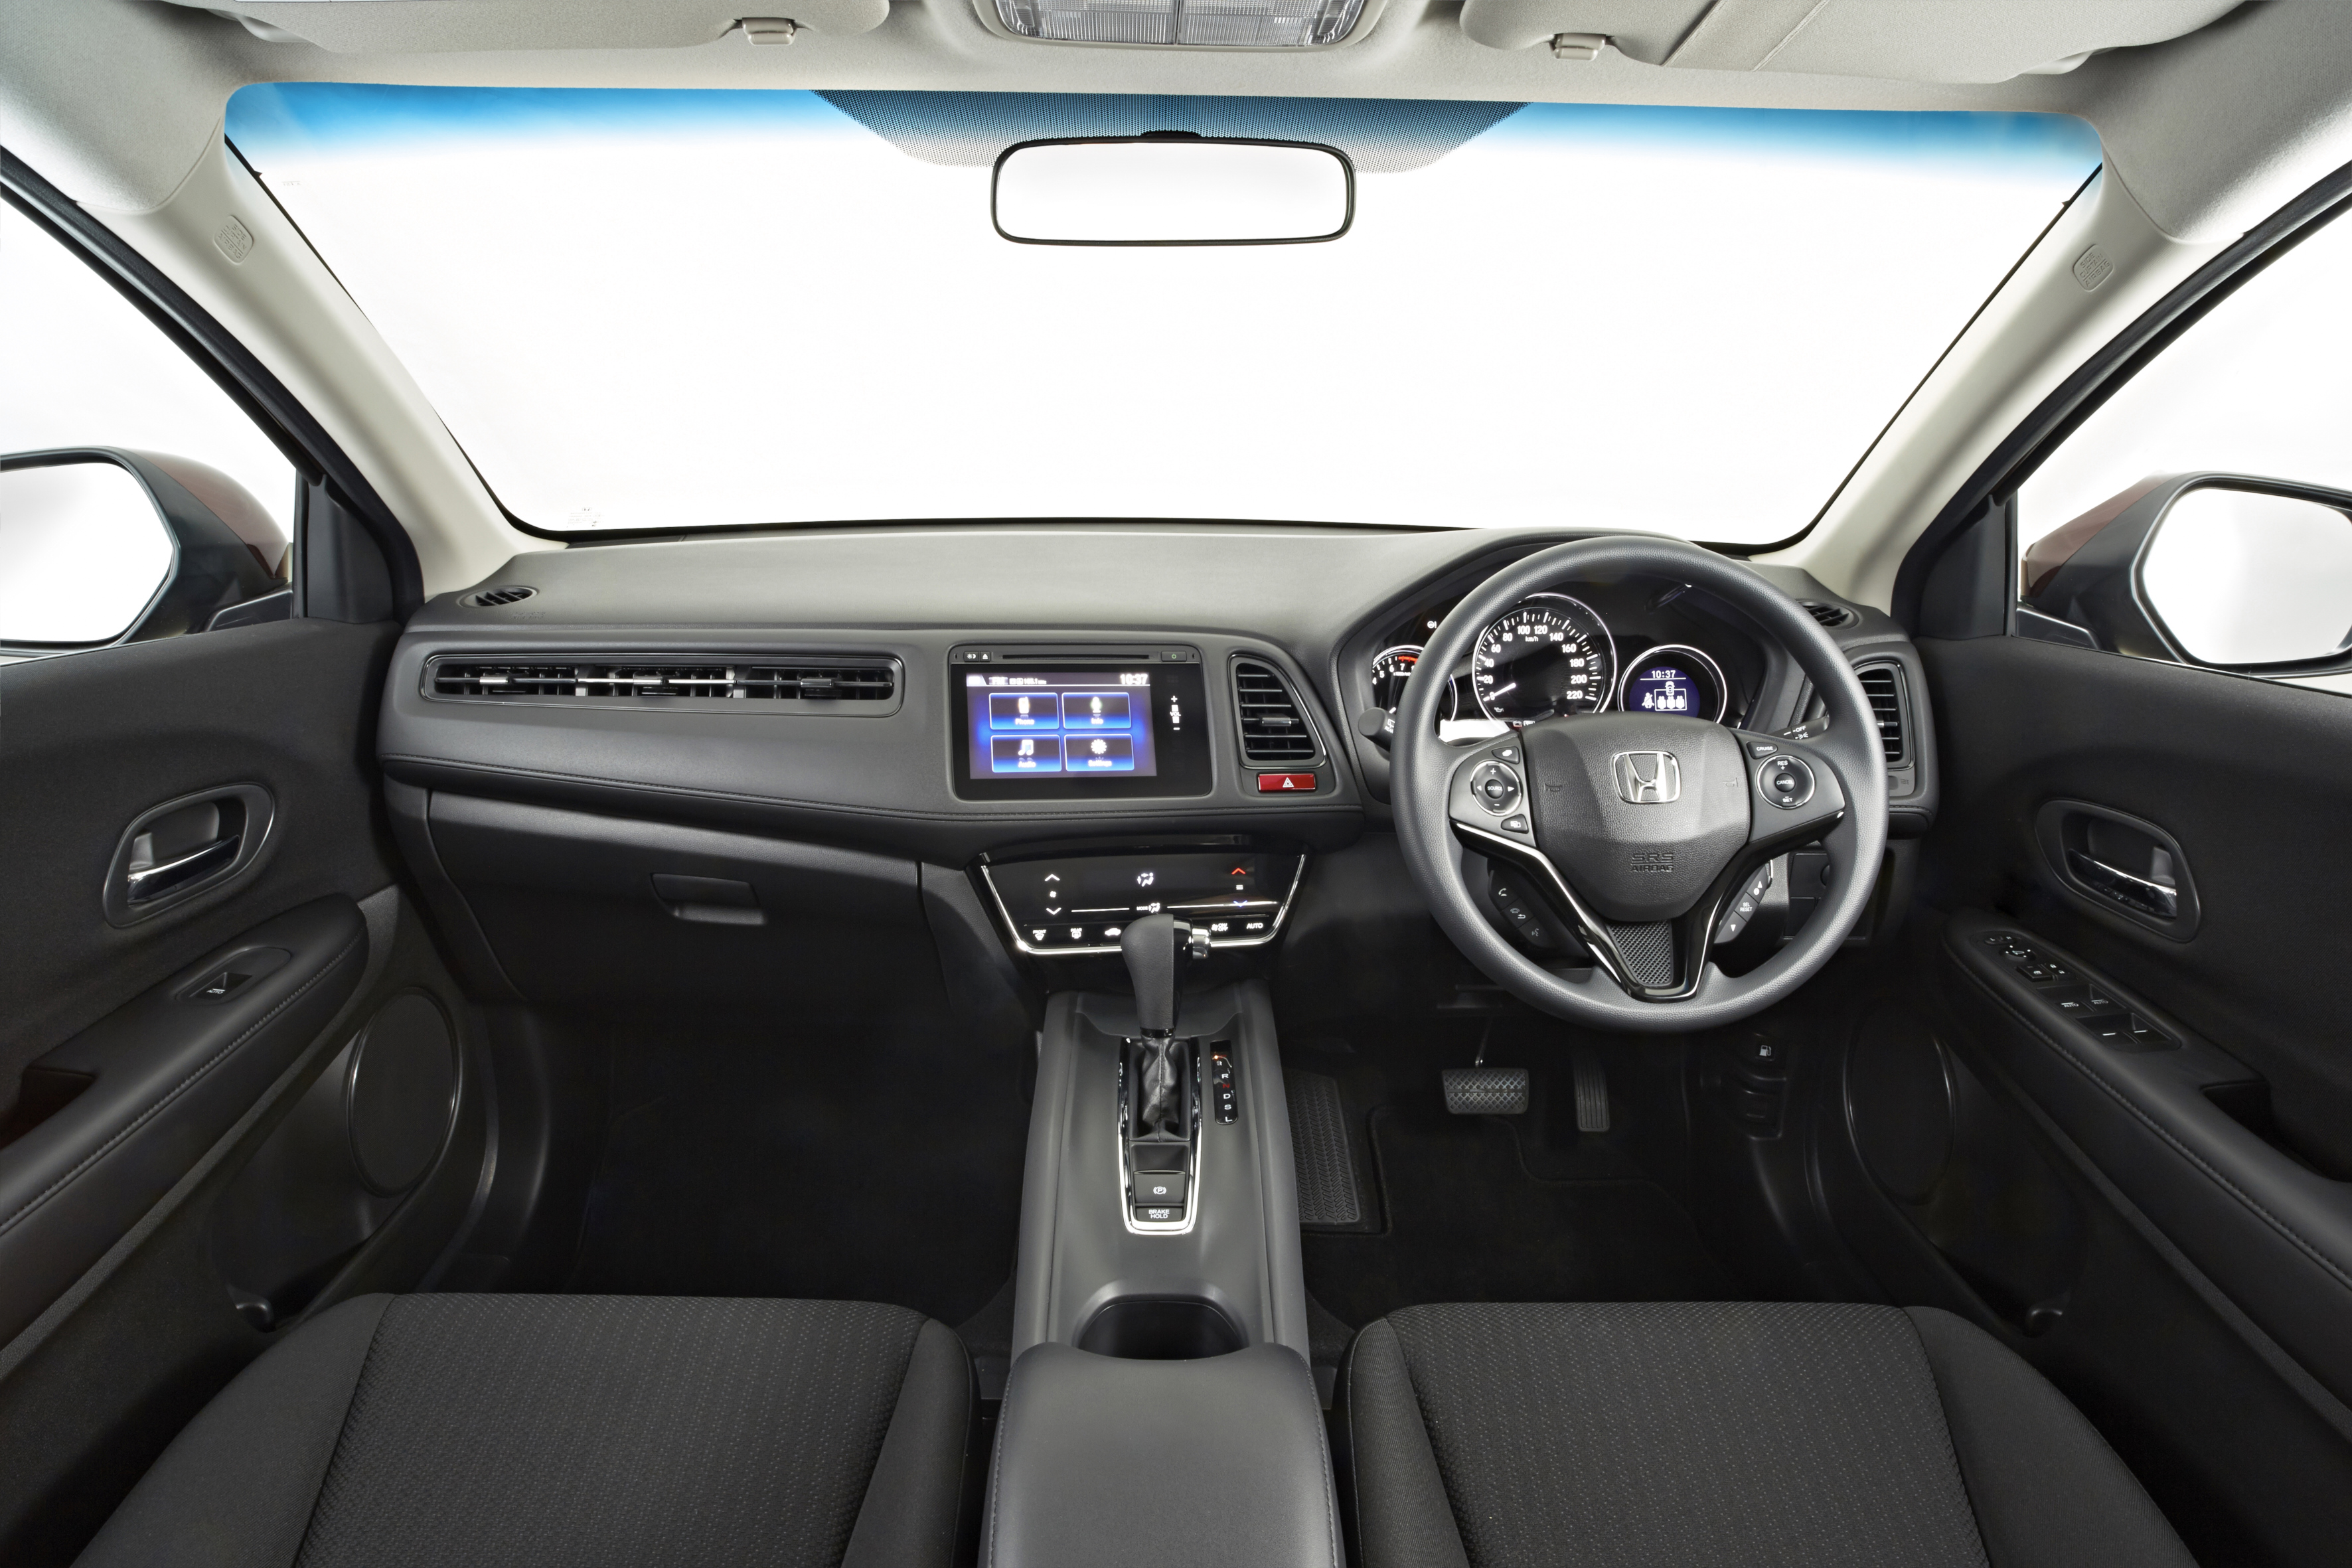 Honda HR-V 4k specifications